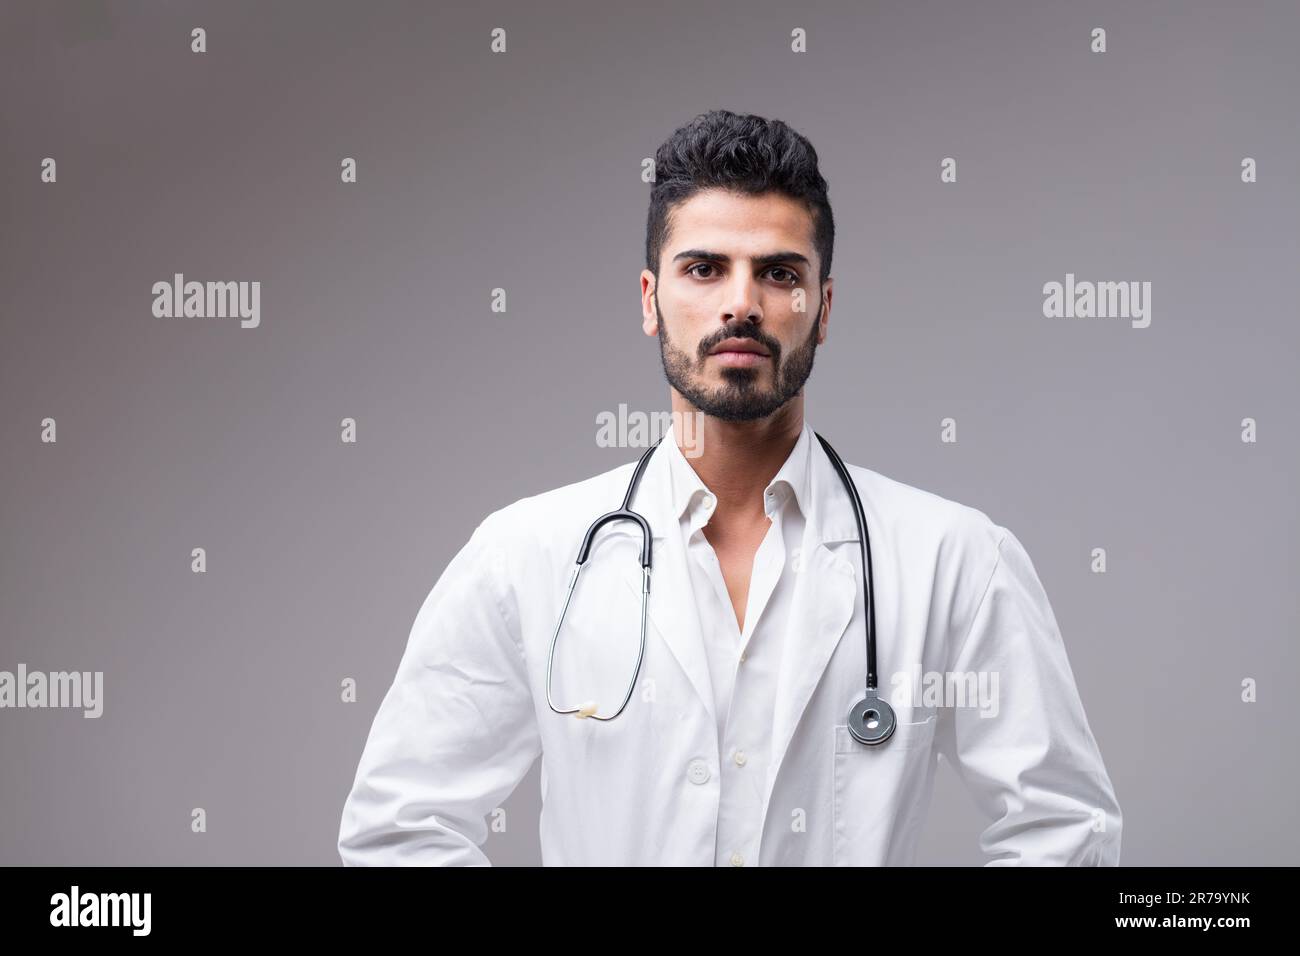 Un medico serio, mediorientale con una carnagione scura. Ritratto di un giovane uomo, barba curata professionalmente, pronto ad assisterti Foto Stock